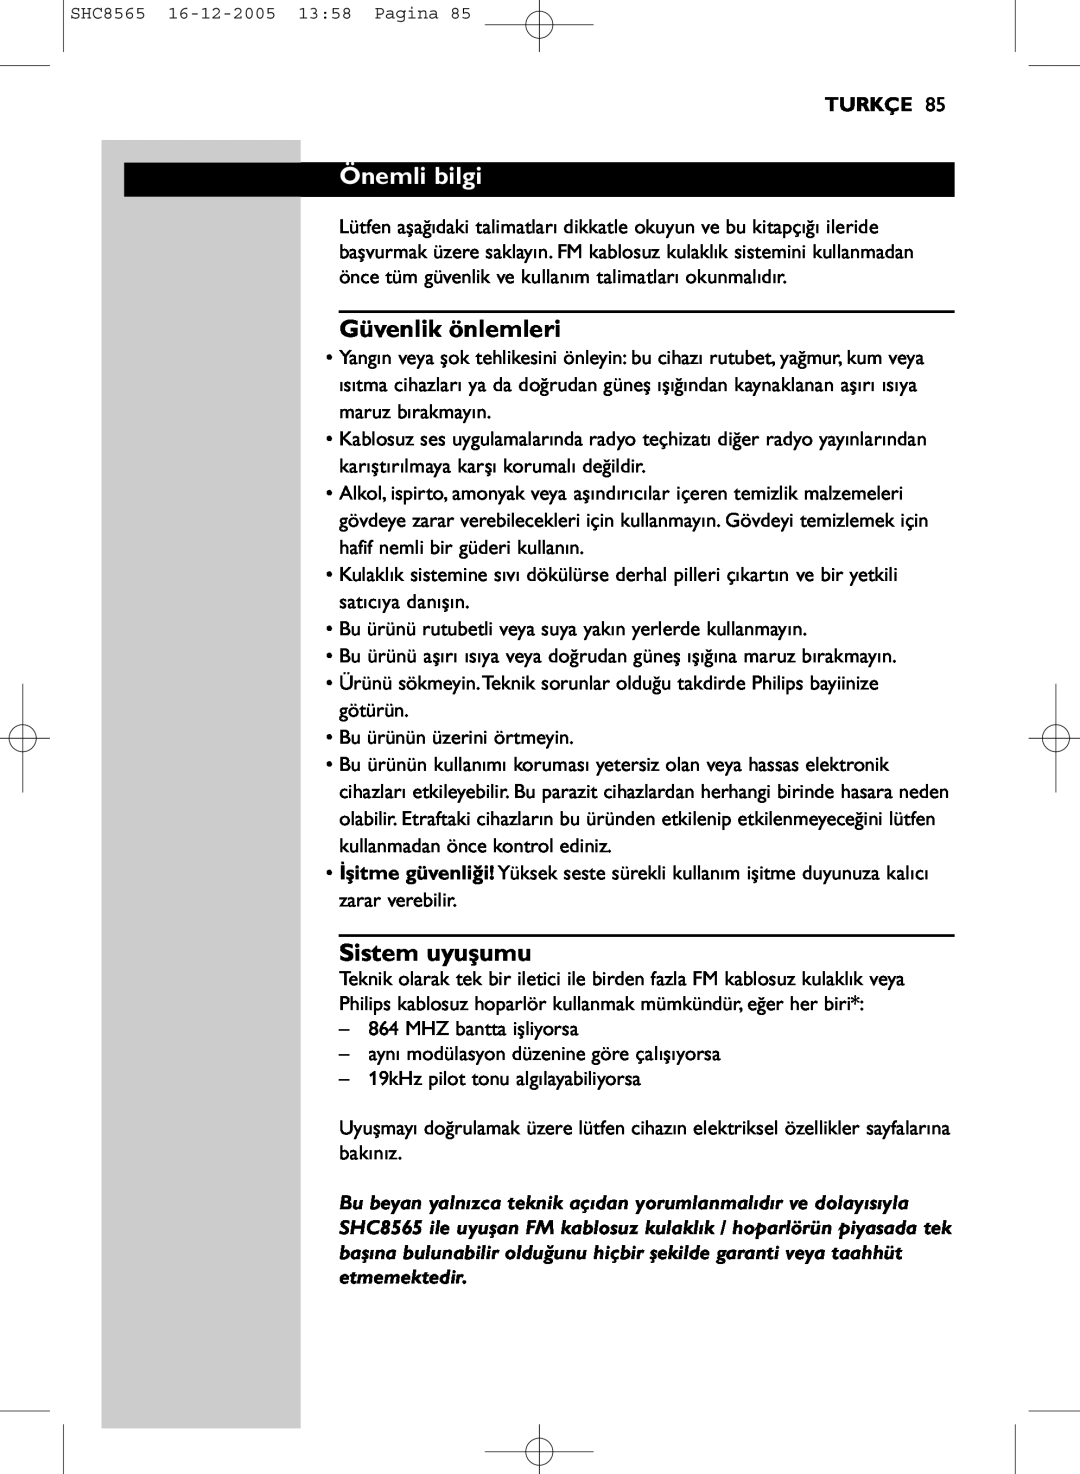 Philips SHC8565 manual Önemli bilgi, Güvenlik önlemleri, Sistem uyuşumu, Turkçe 